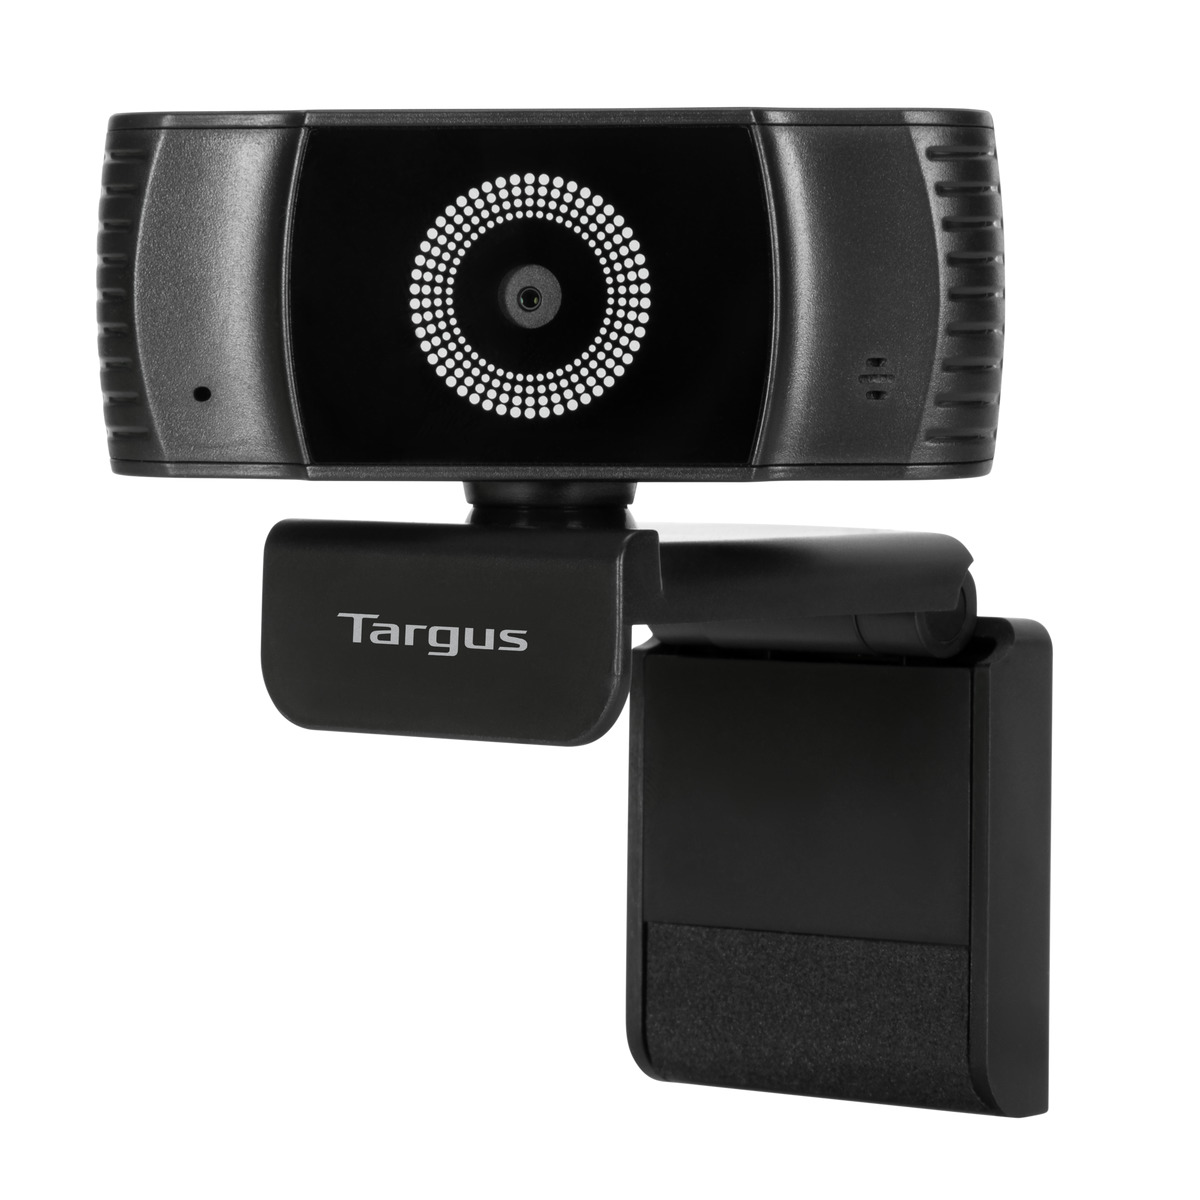  - Webcam1080P Full HD auto focus Targus Negro 3